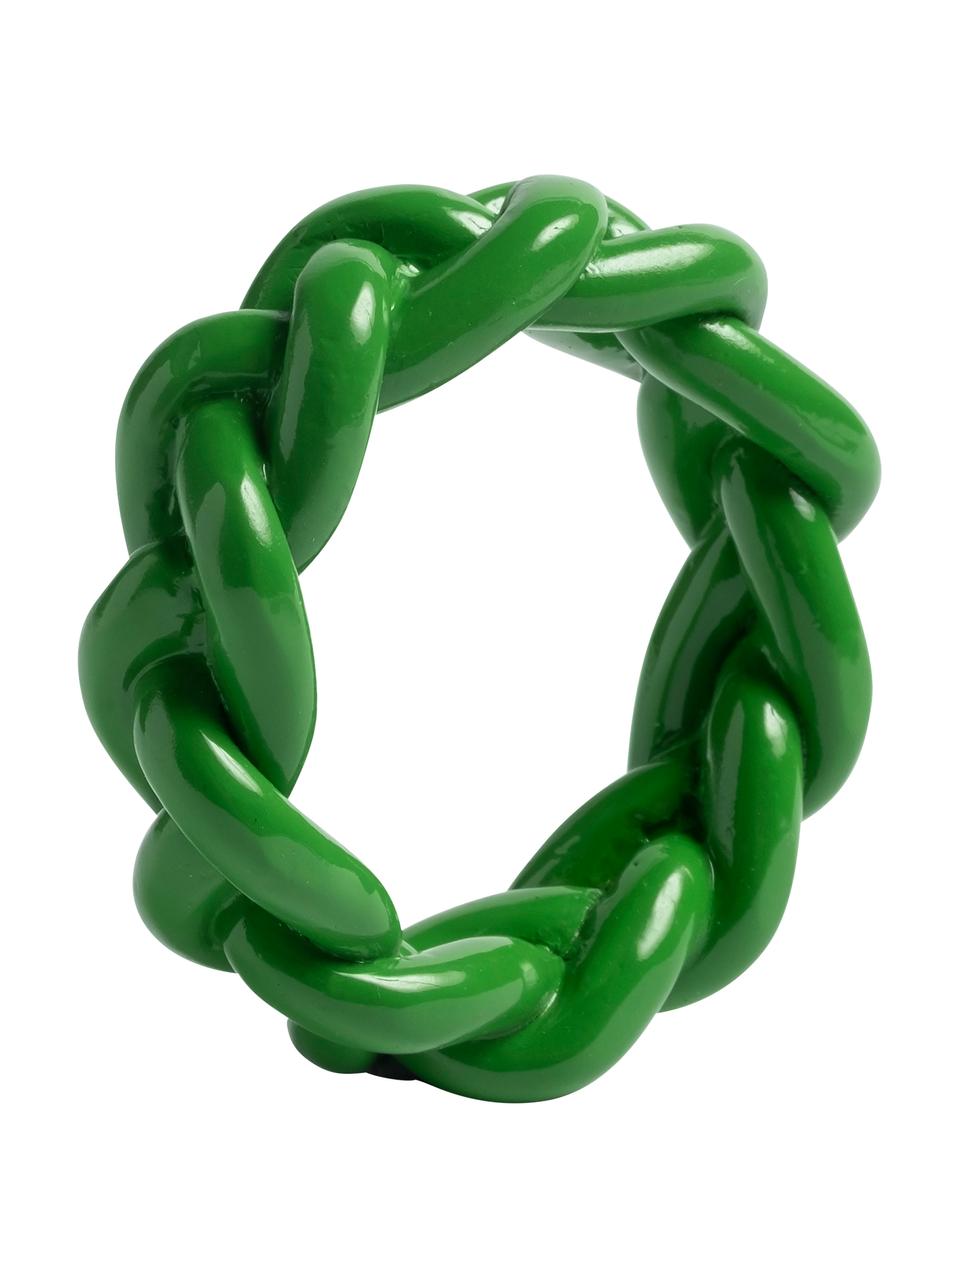 Servetringen Braid in groen, 4 stuks, Polyresin, Groen, Ø 6 x H 2 cm